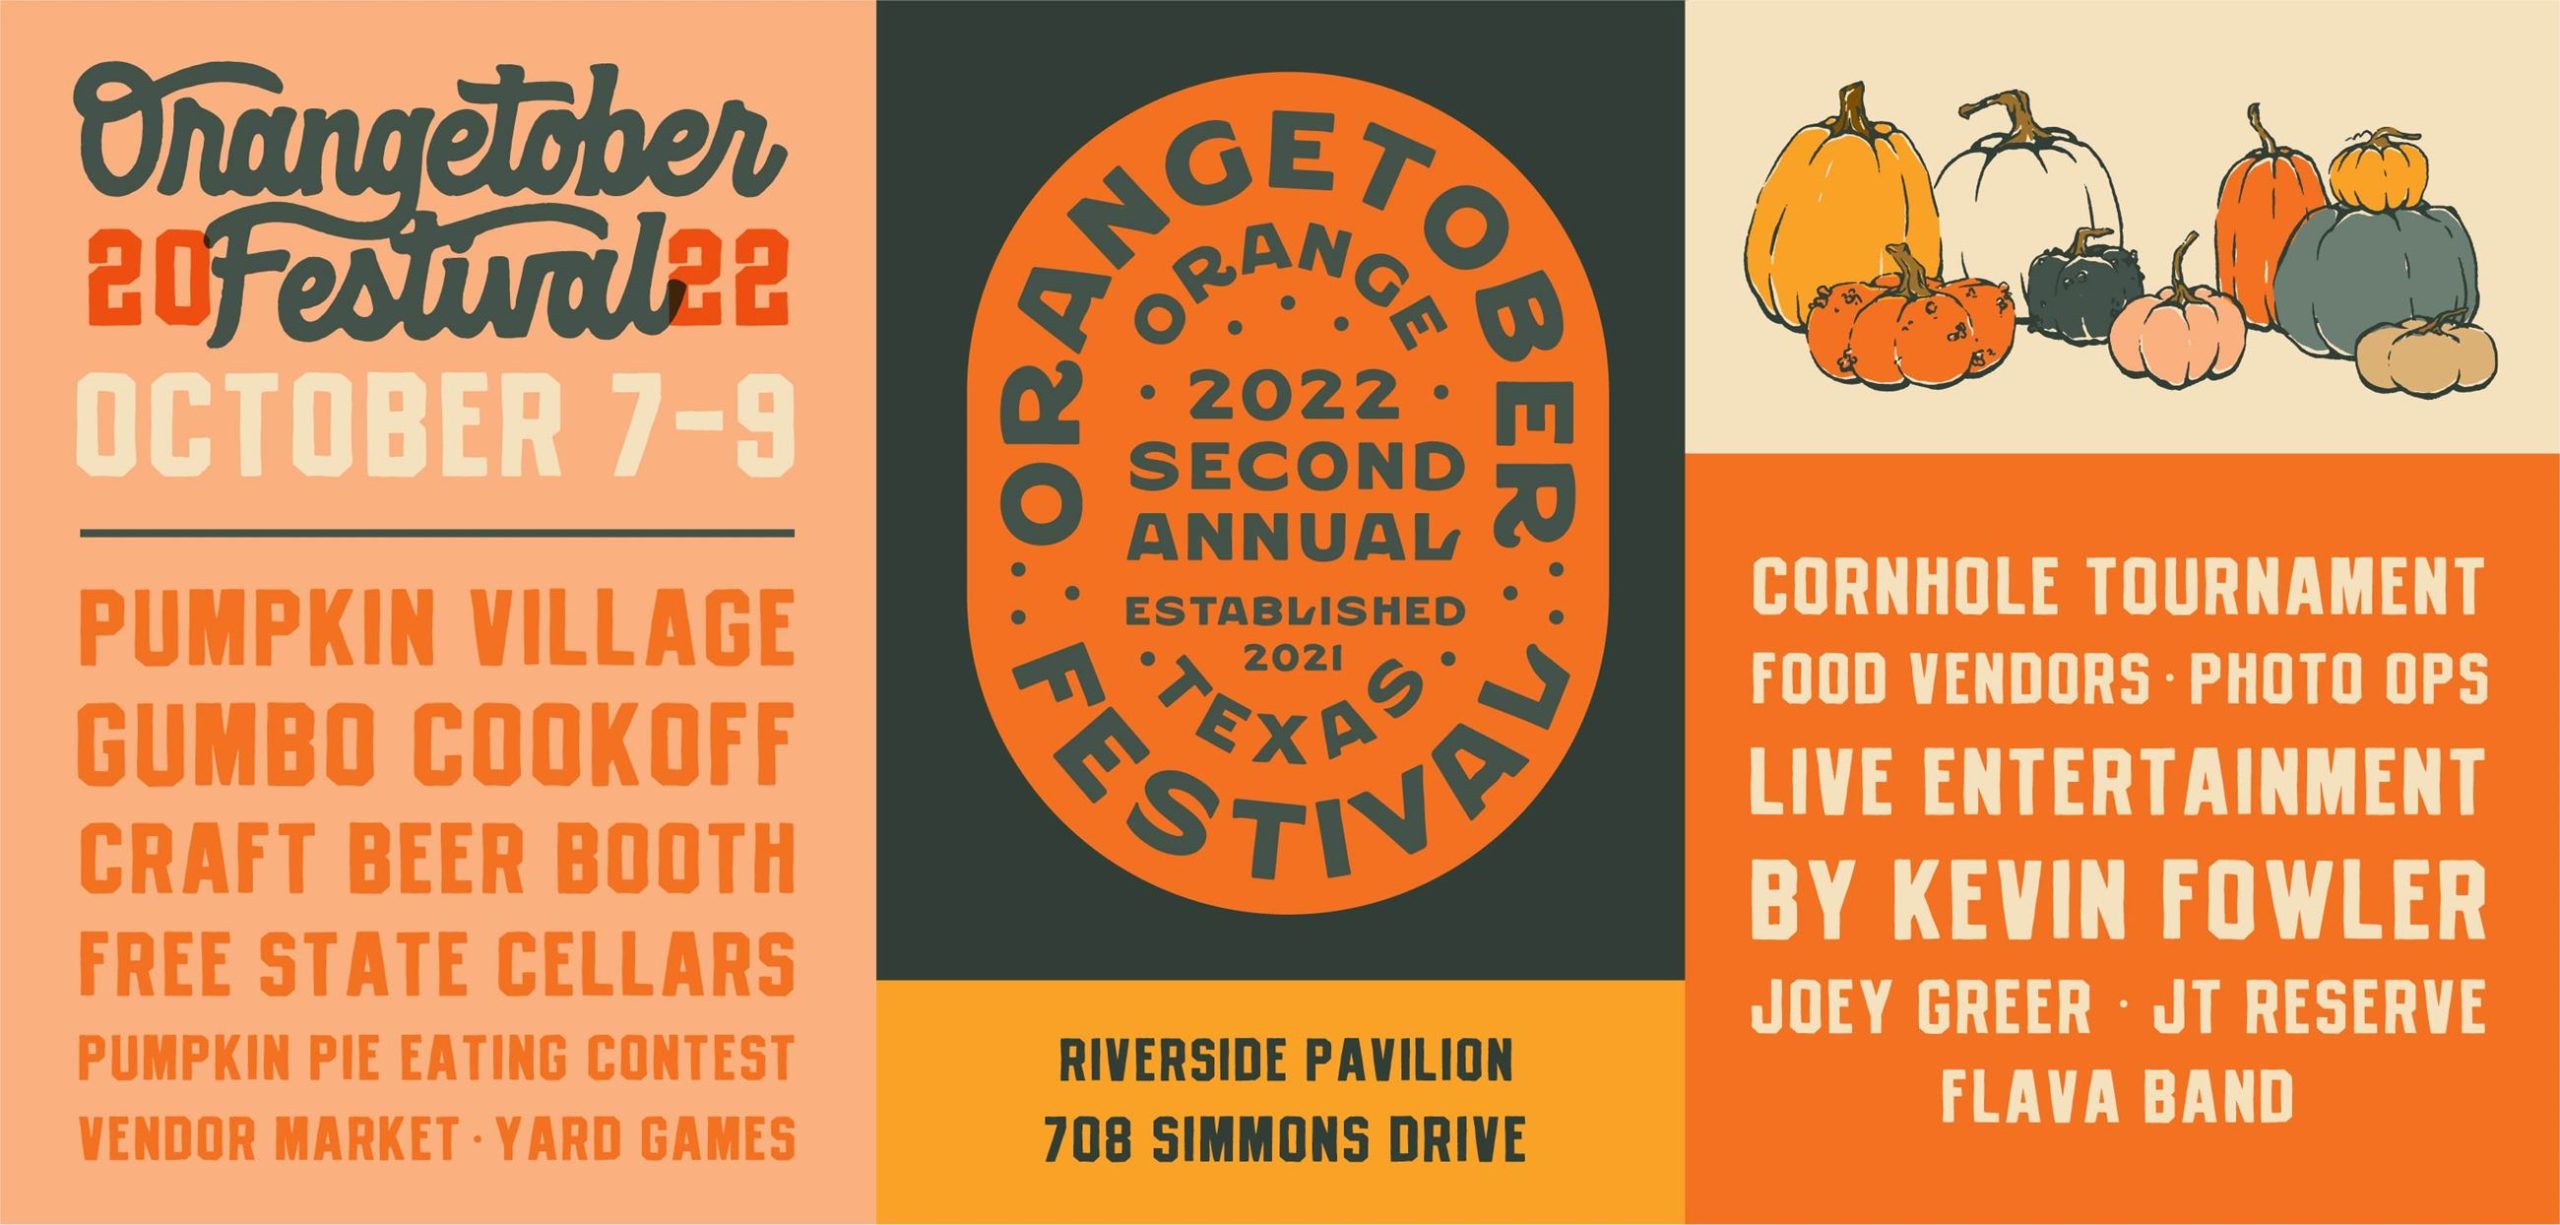 orangetober festival flyer